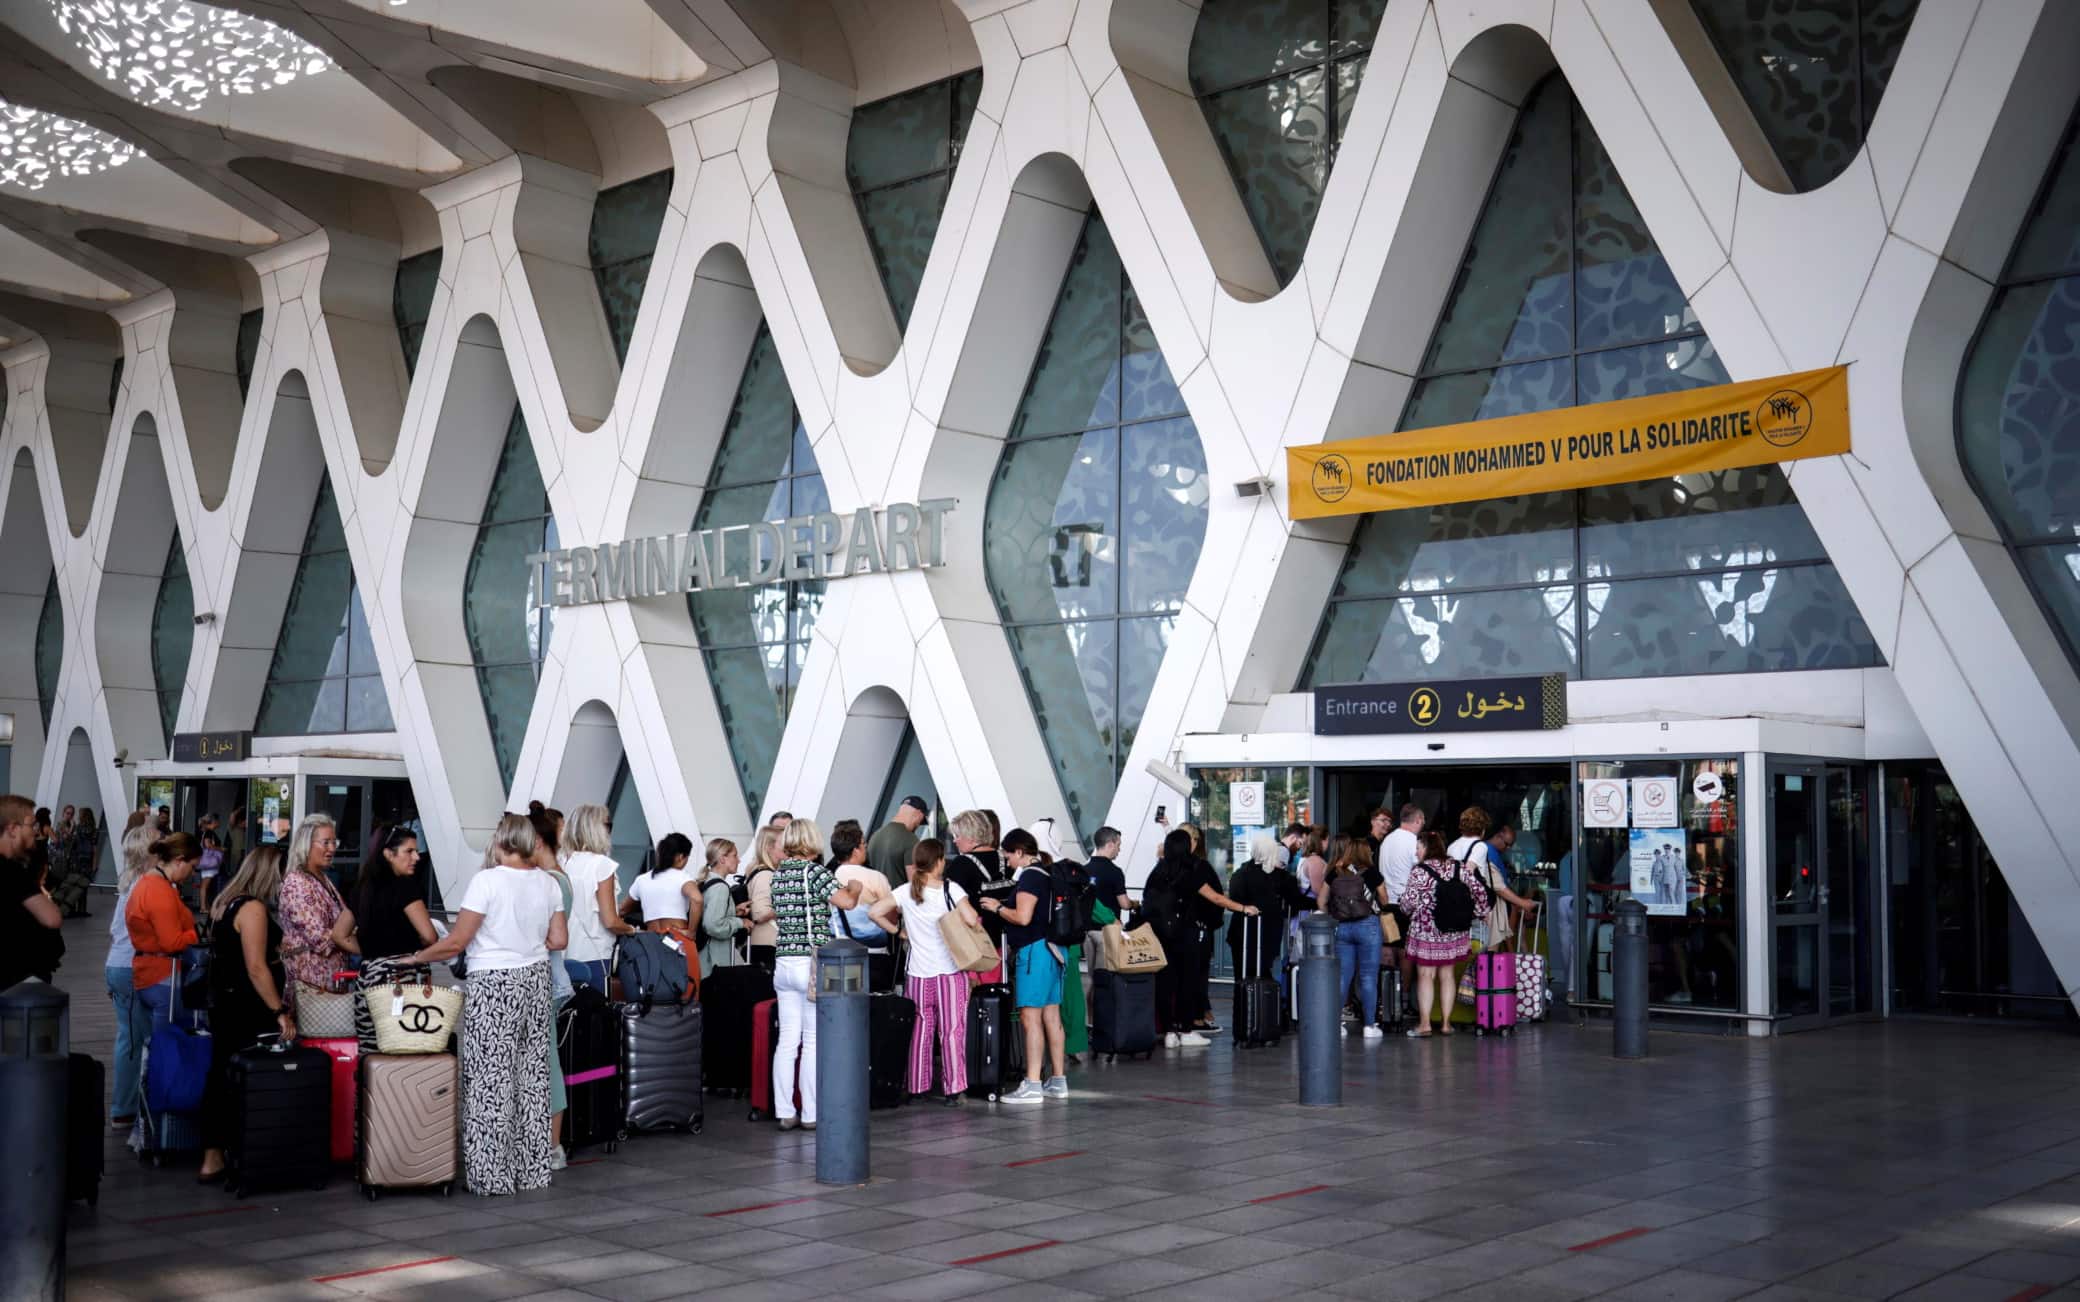 La fila di turisti all'aeroporto di Marrakech